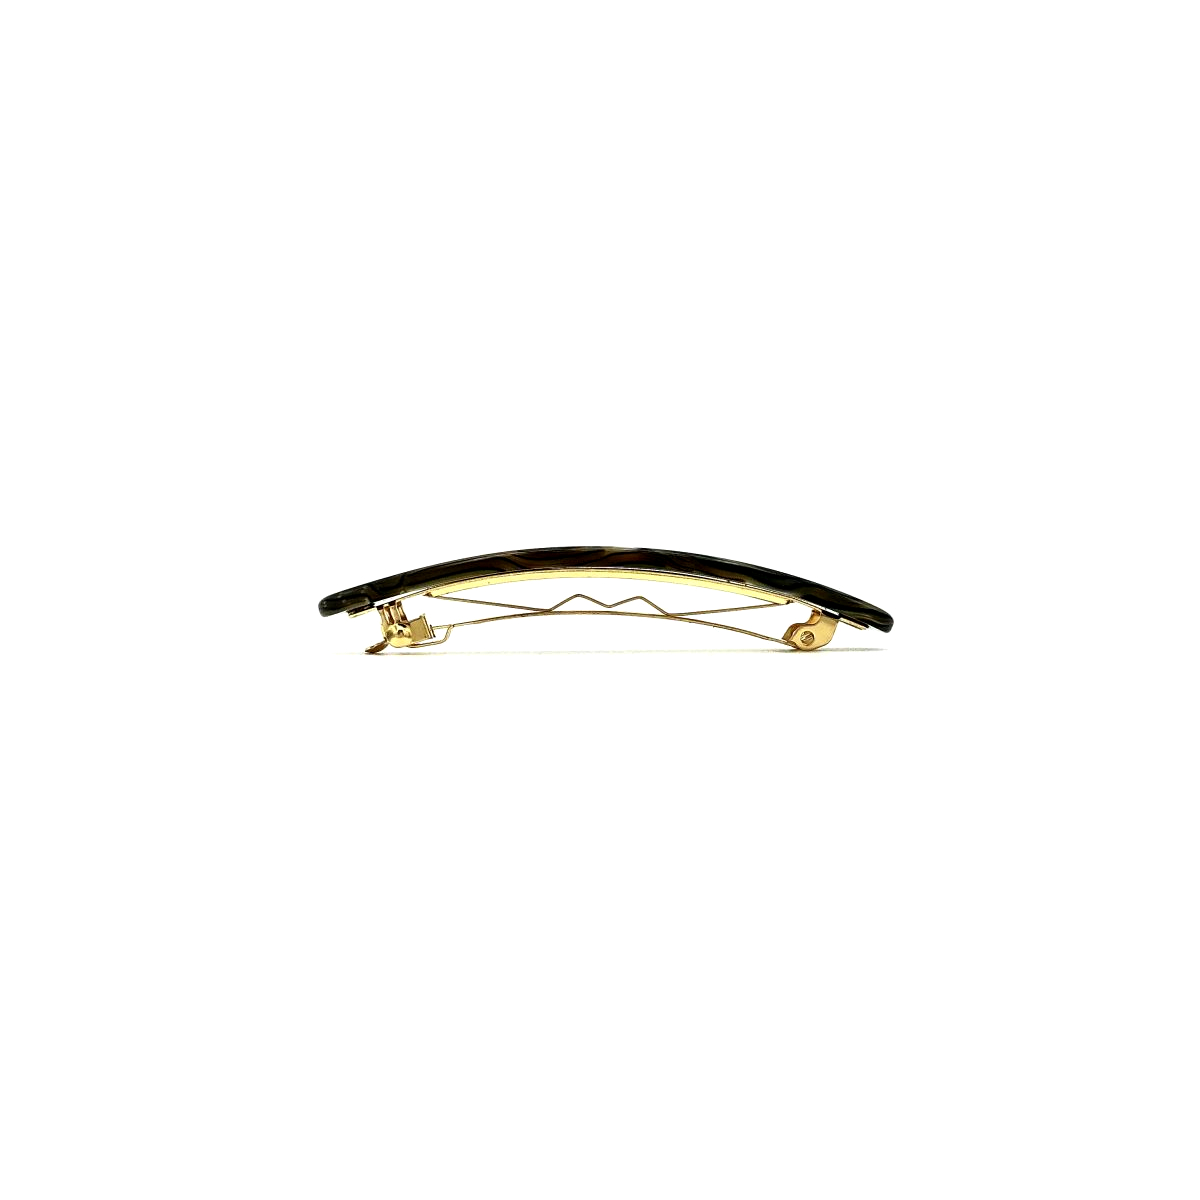 Haarspange perlmutt/braun - klein, flach - 7,7 cm